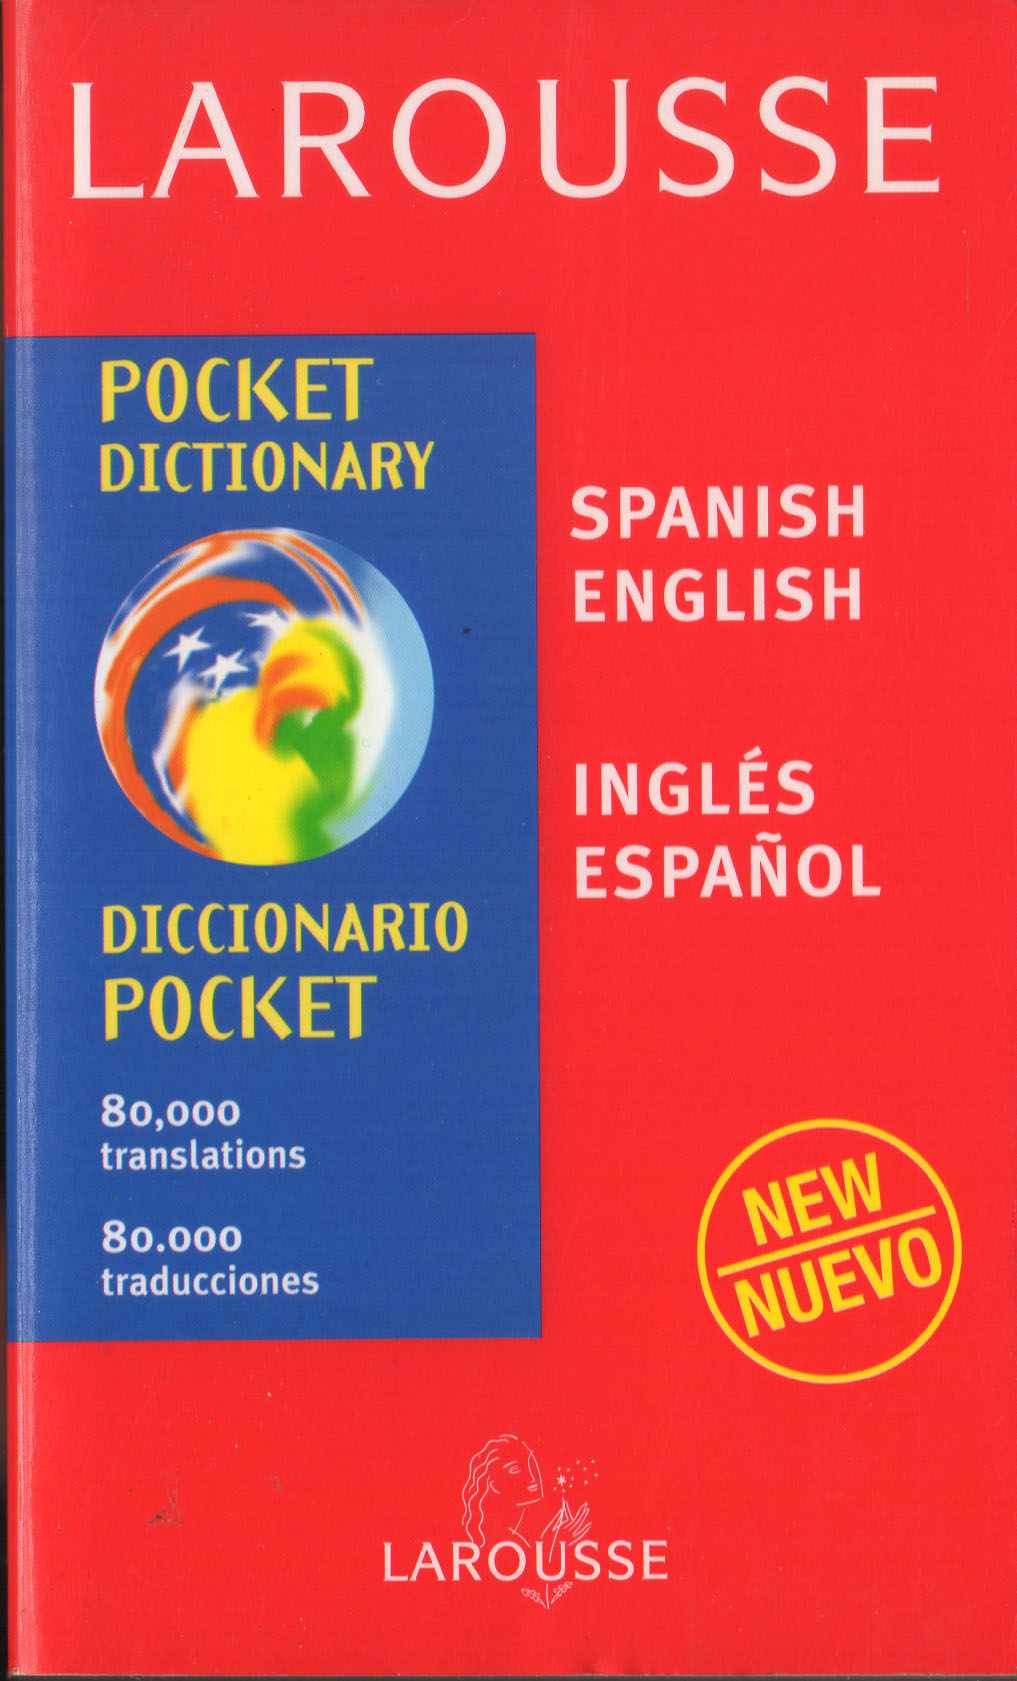 traductor english spanish gratis